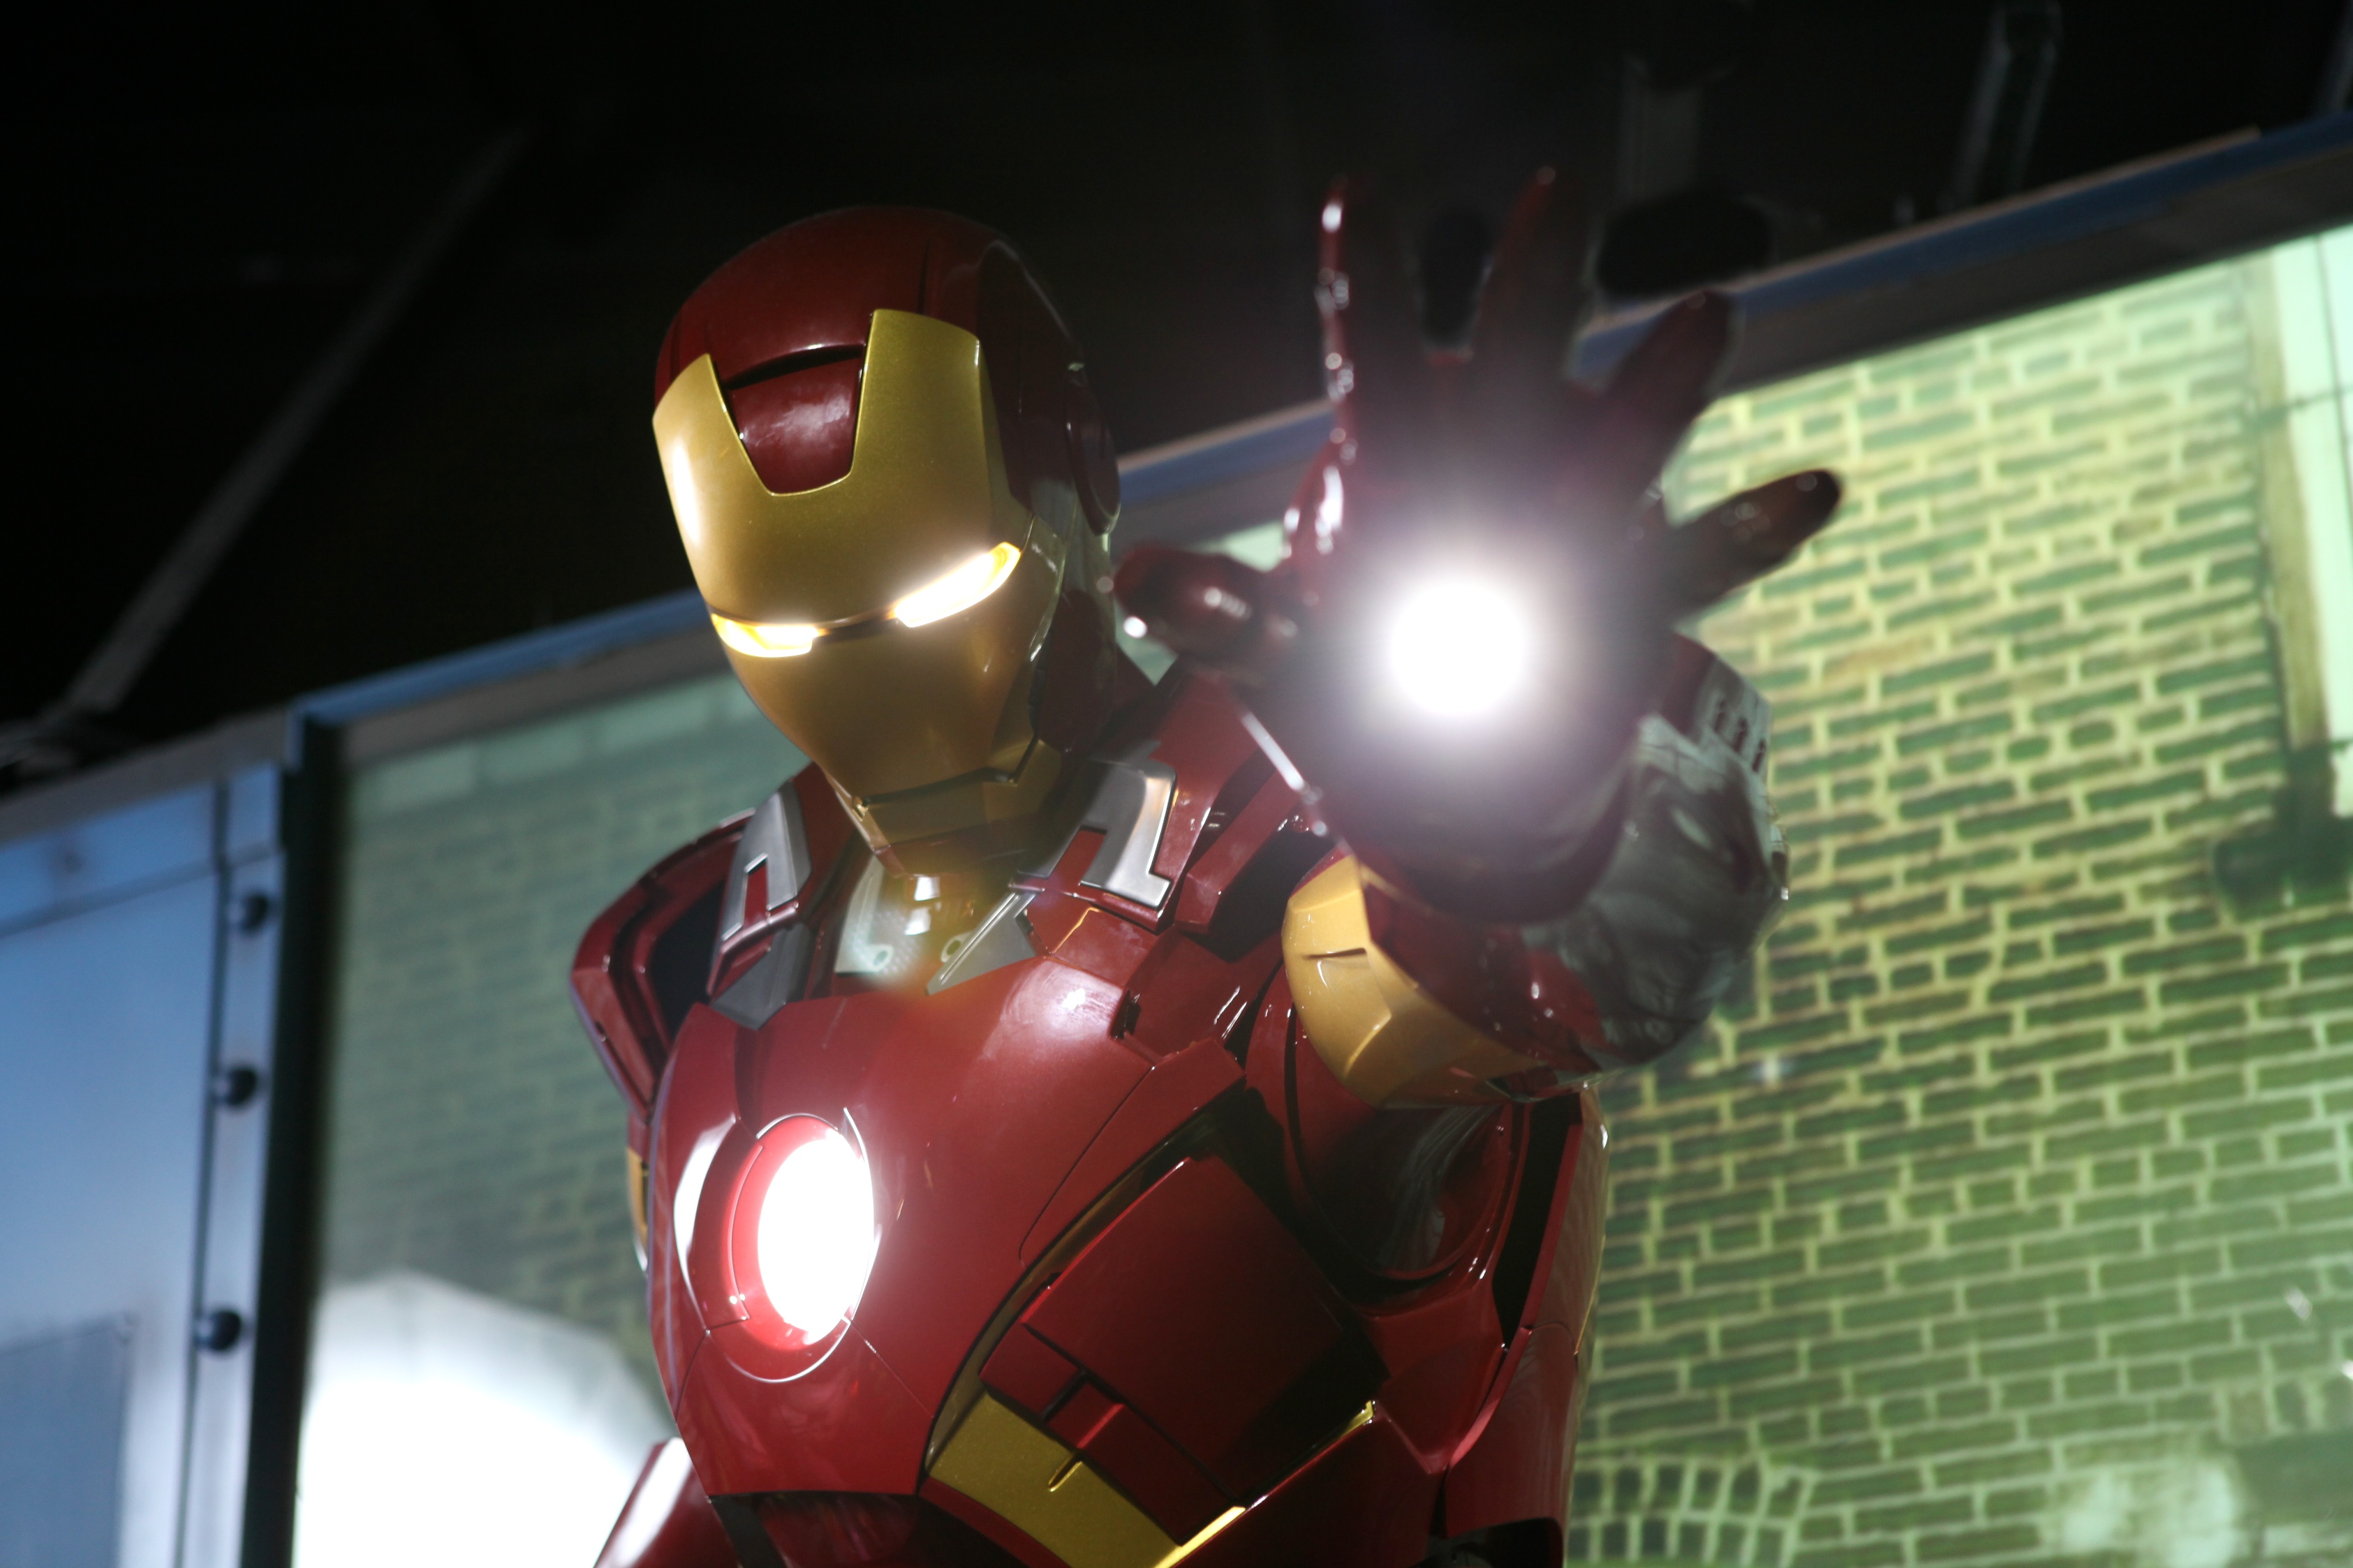 Iron Man figure at Madame Tussauds Blackpool Marvel area